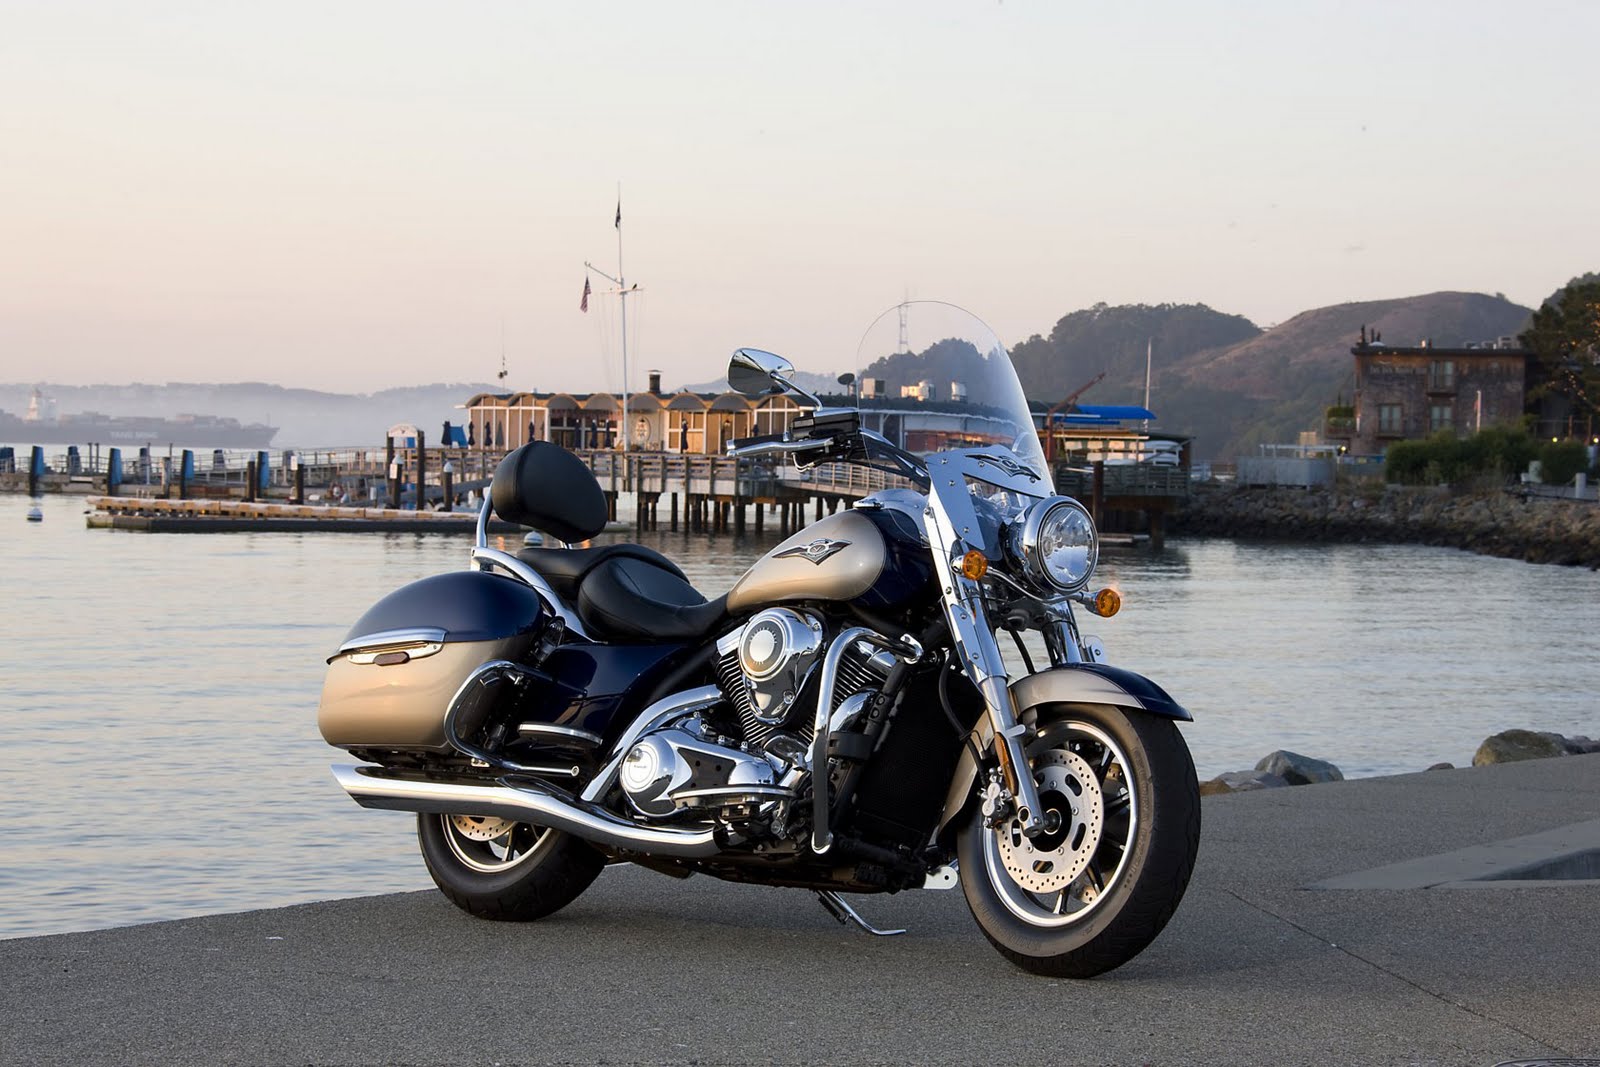 Top Motorcycle: 2009 Kawasaki Vulcan 1700 Nomad